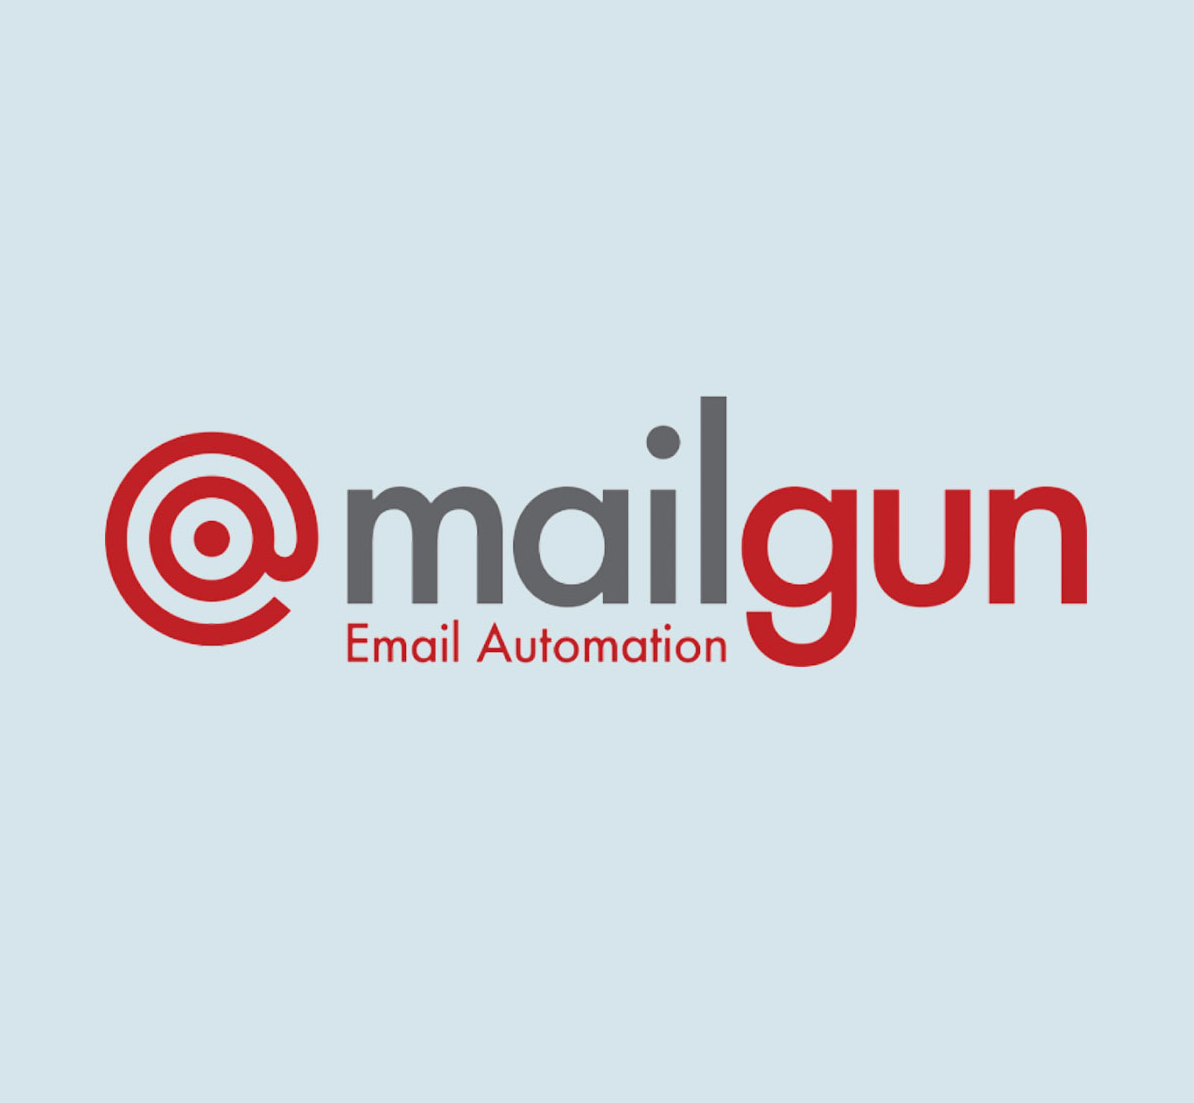 Mail Gun